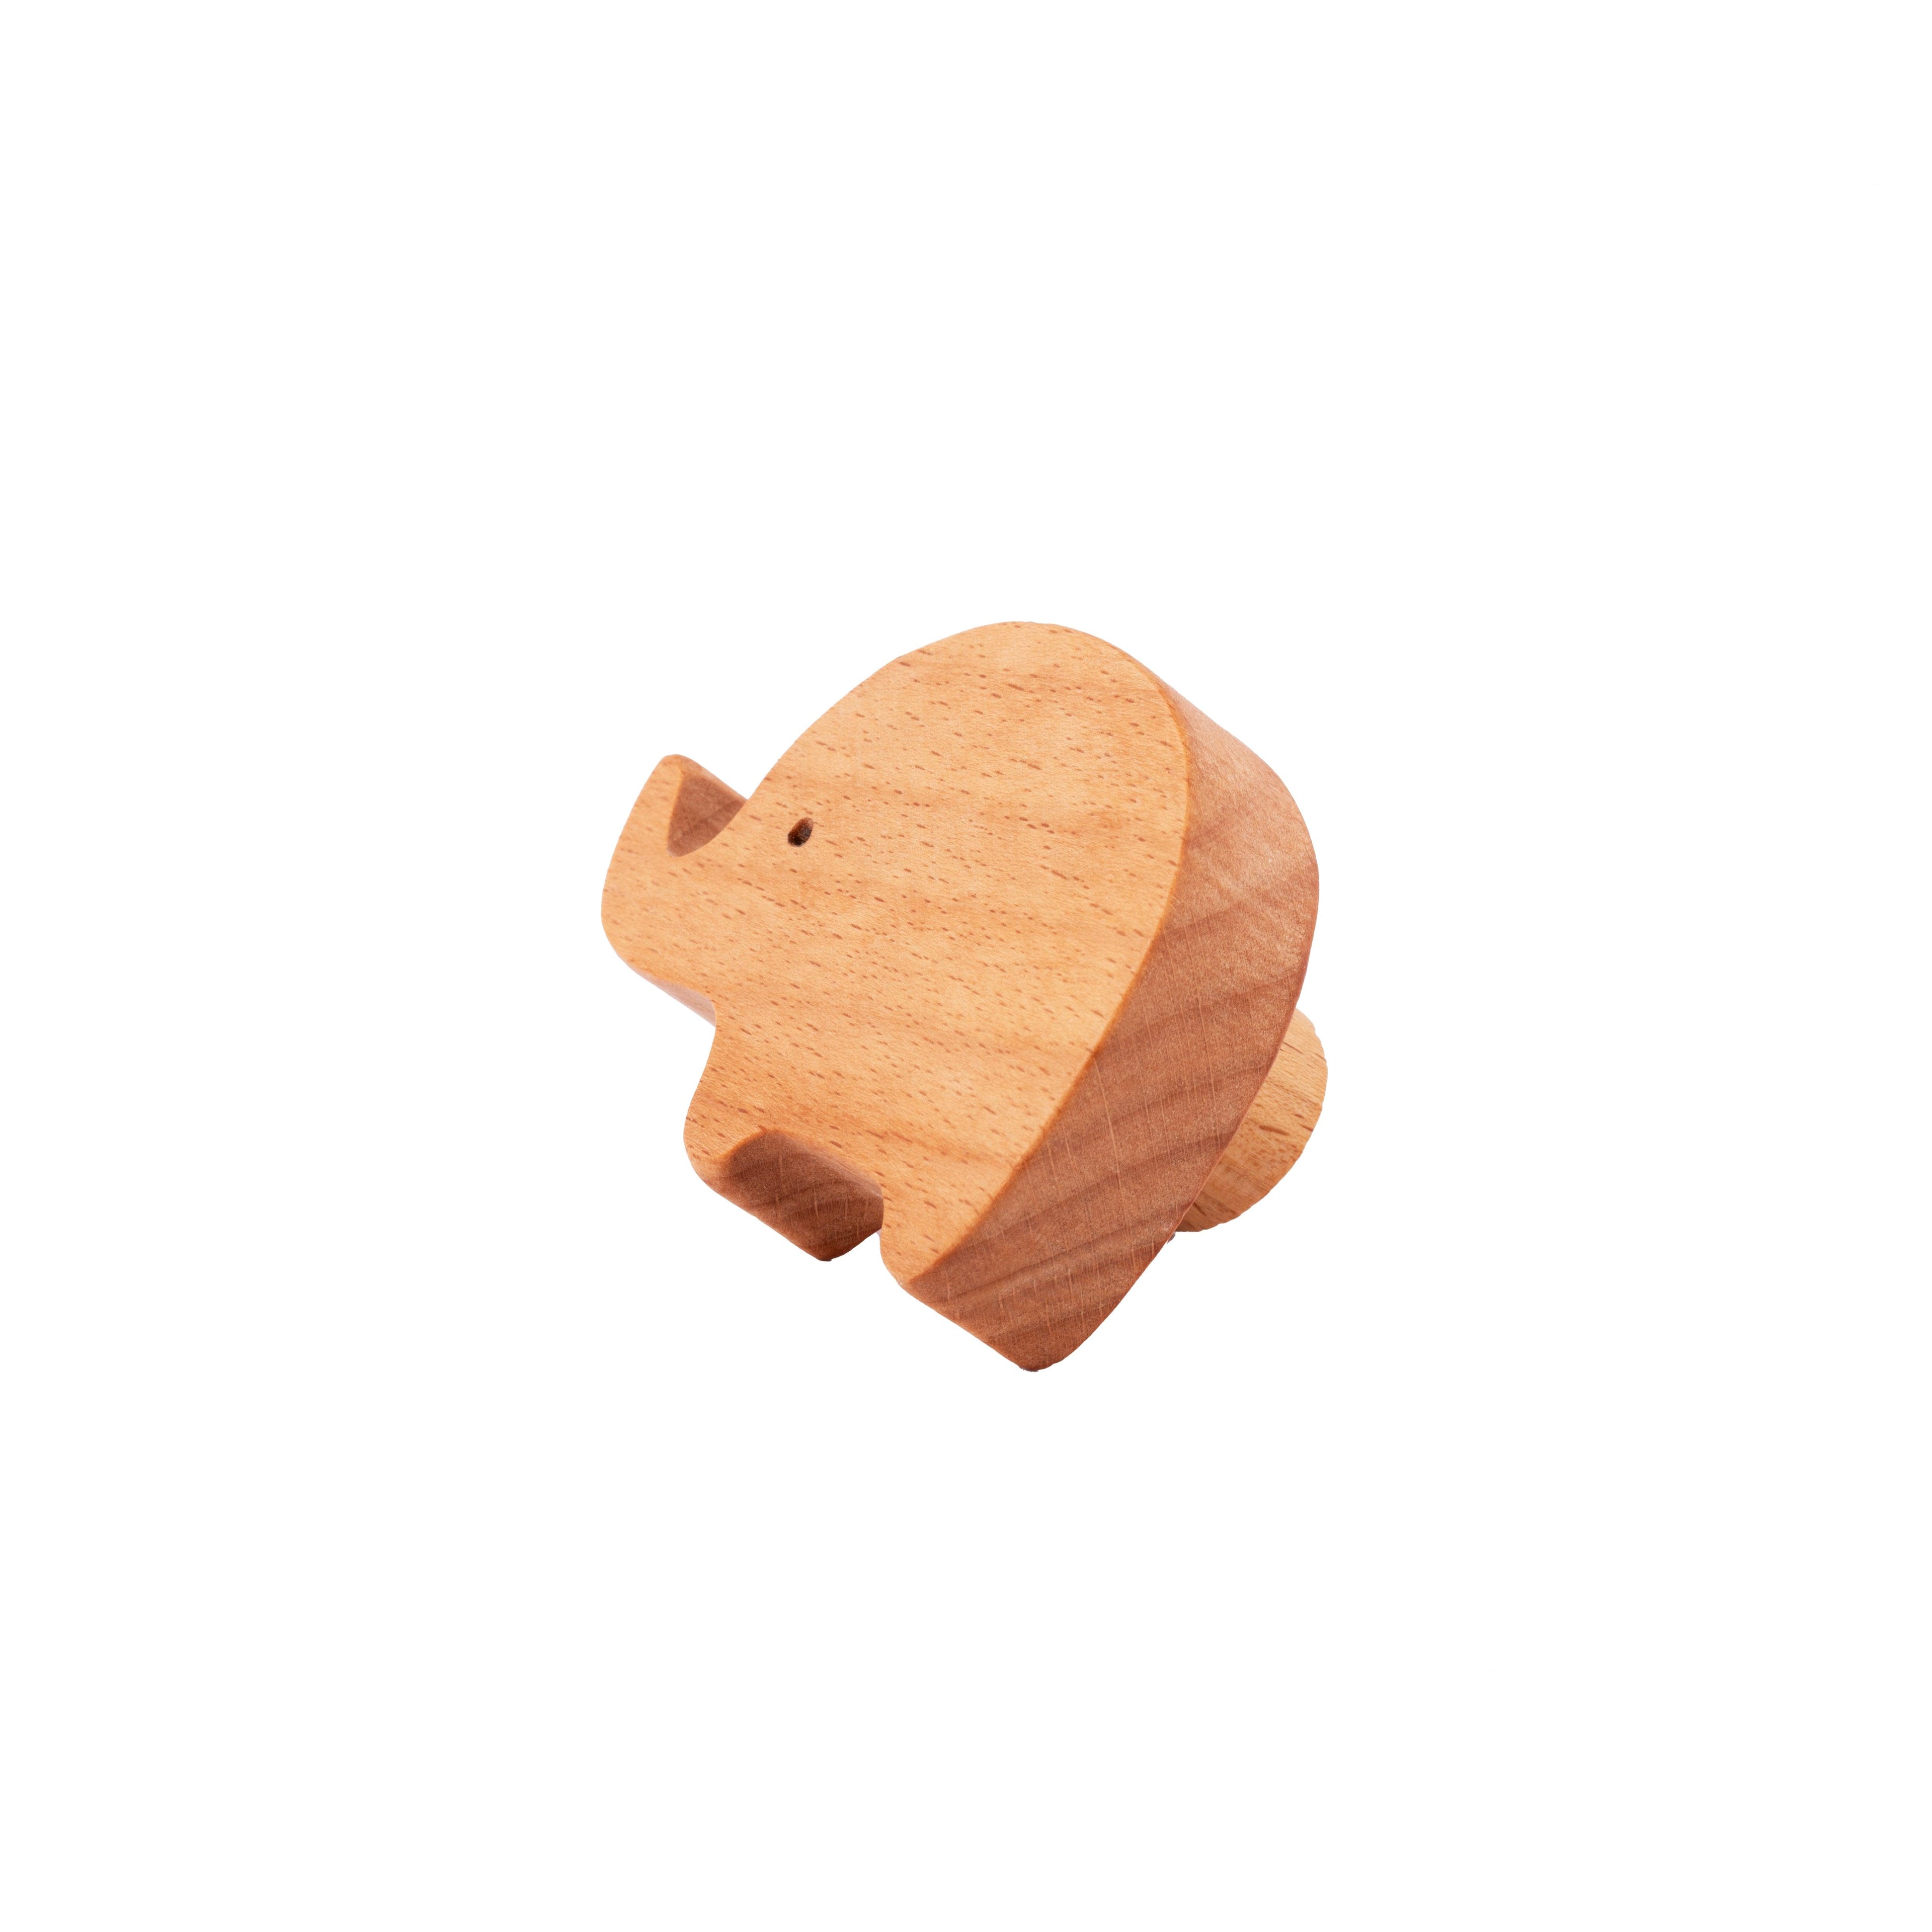 Elephant Wooden Knob Knob 50mm / Beige / Wood - M A N T A R A